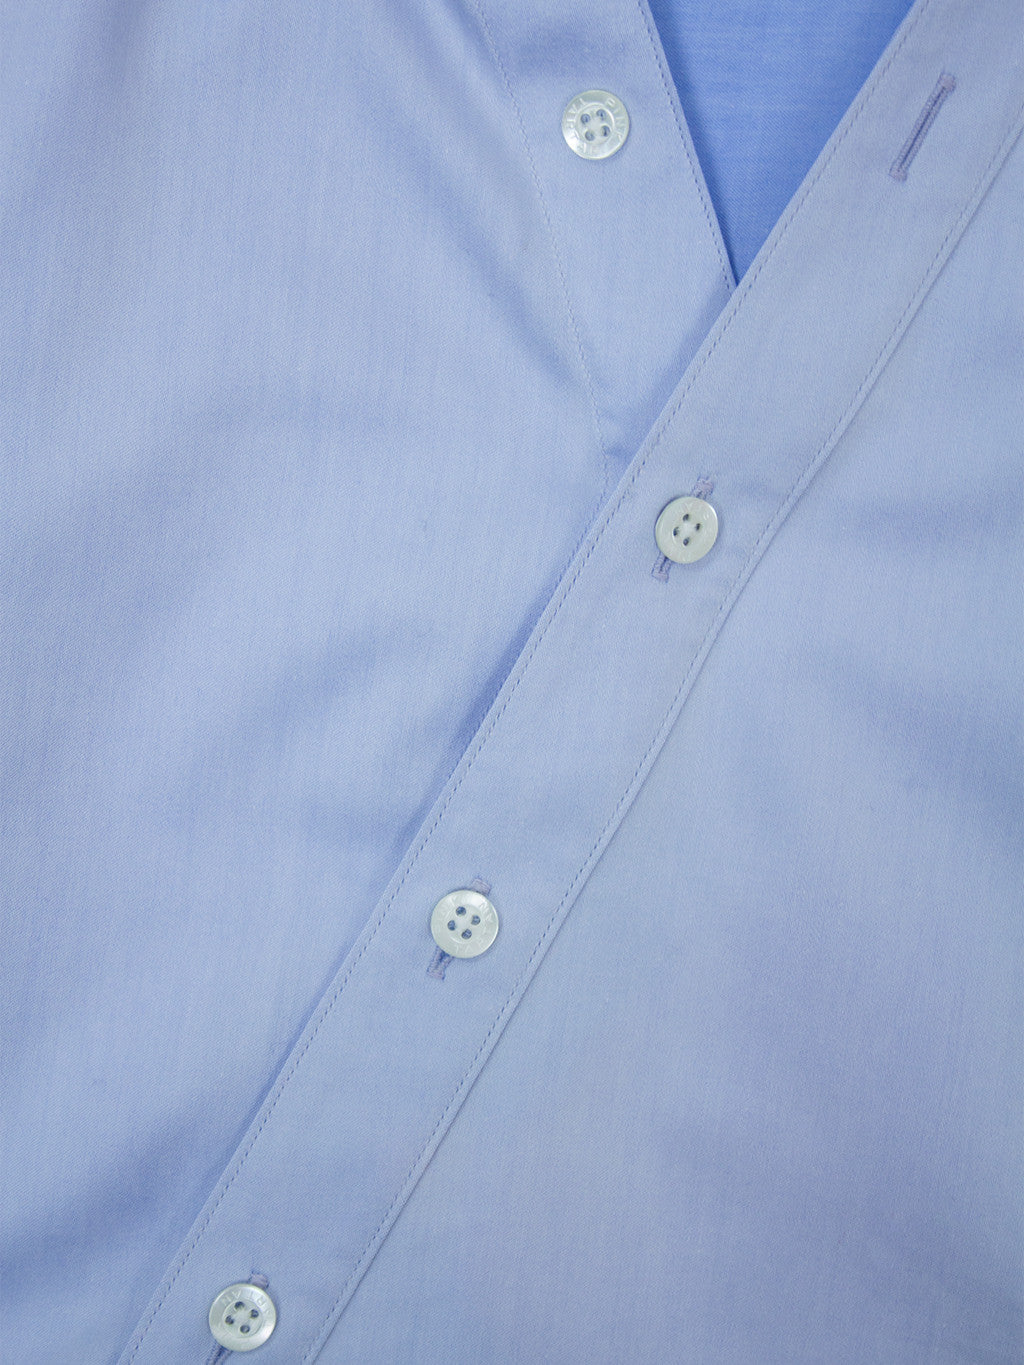 Asymmetric Shirt - Light Blue Pink Tartan